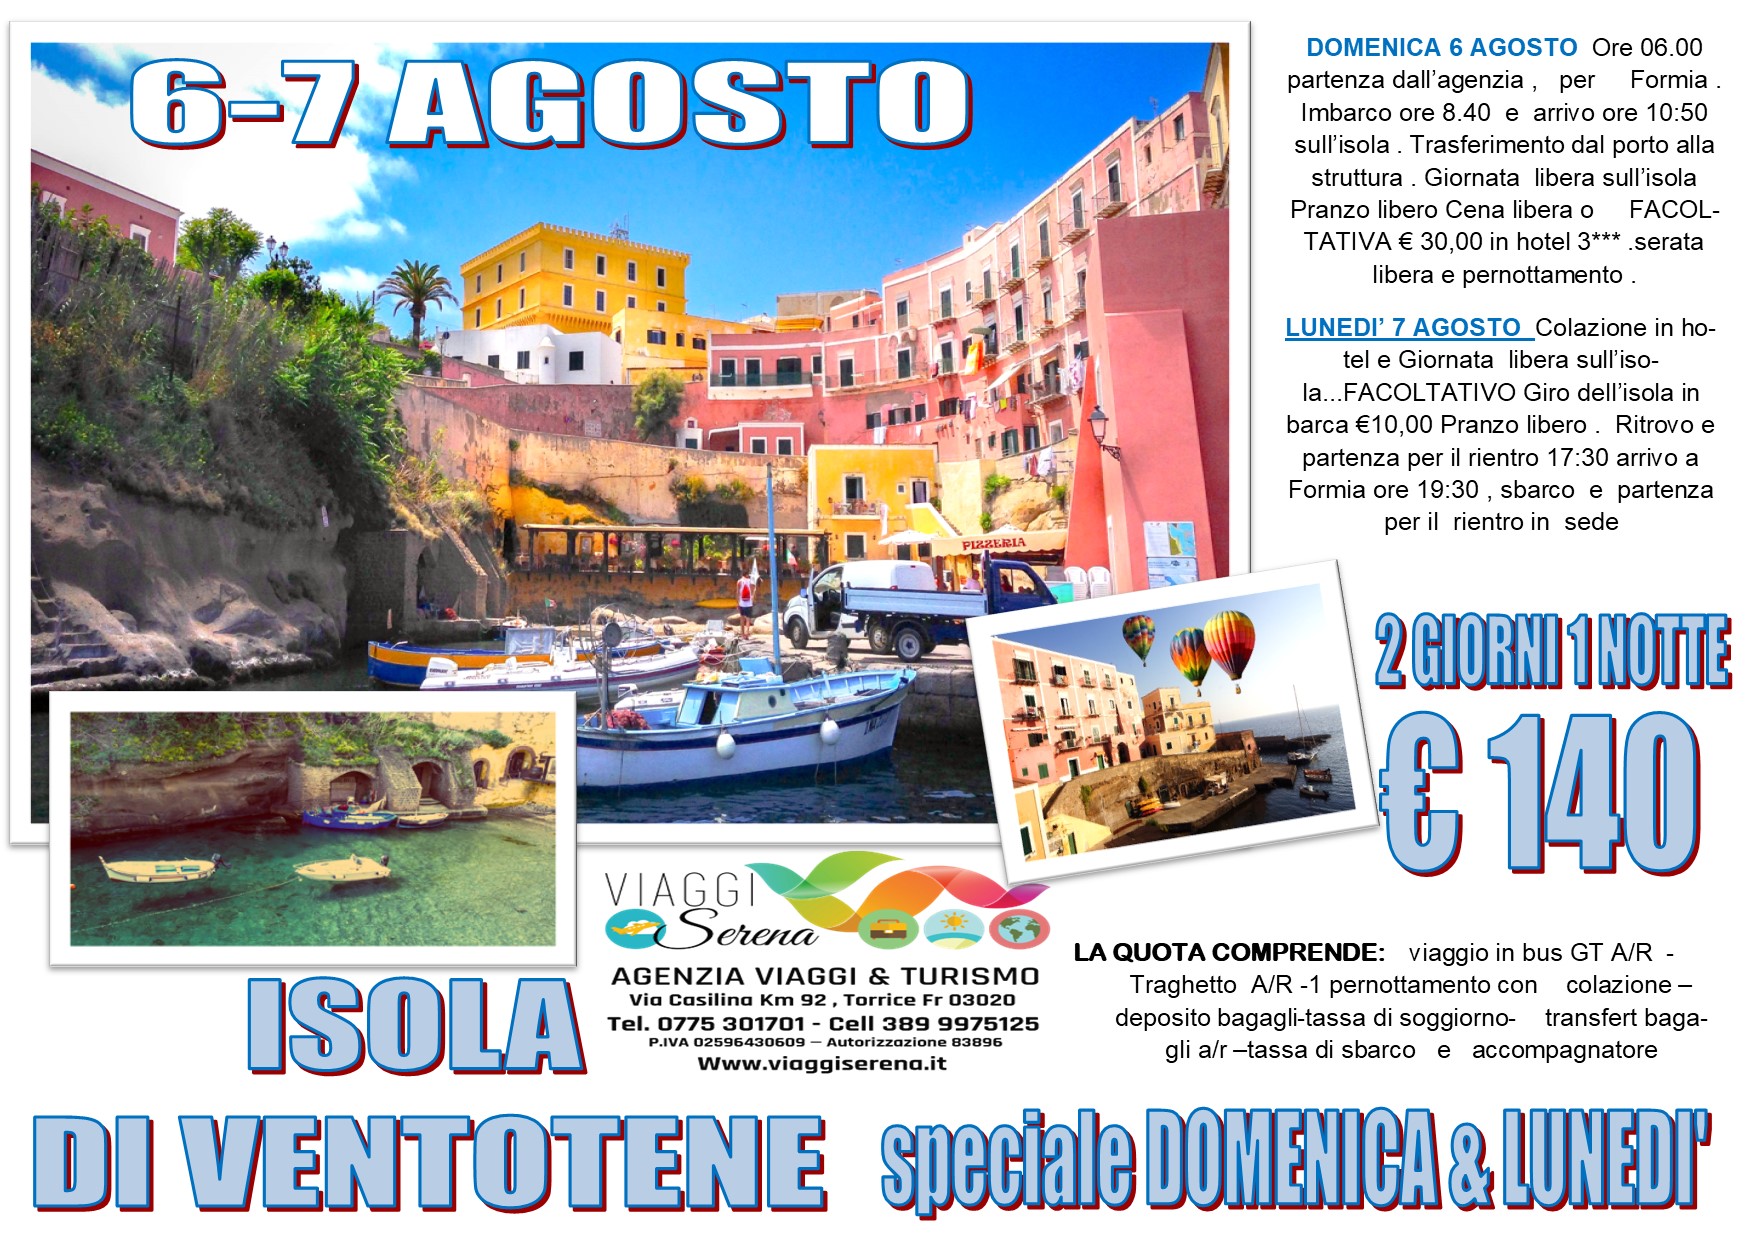 Viaggi di Gruppo: Isola di Ventotene 6-7 Agosto € 140,00